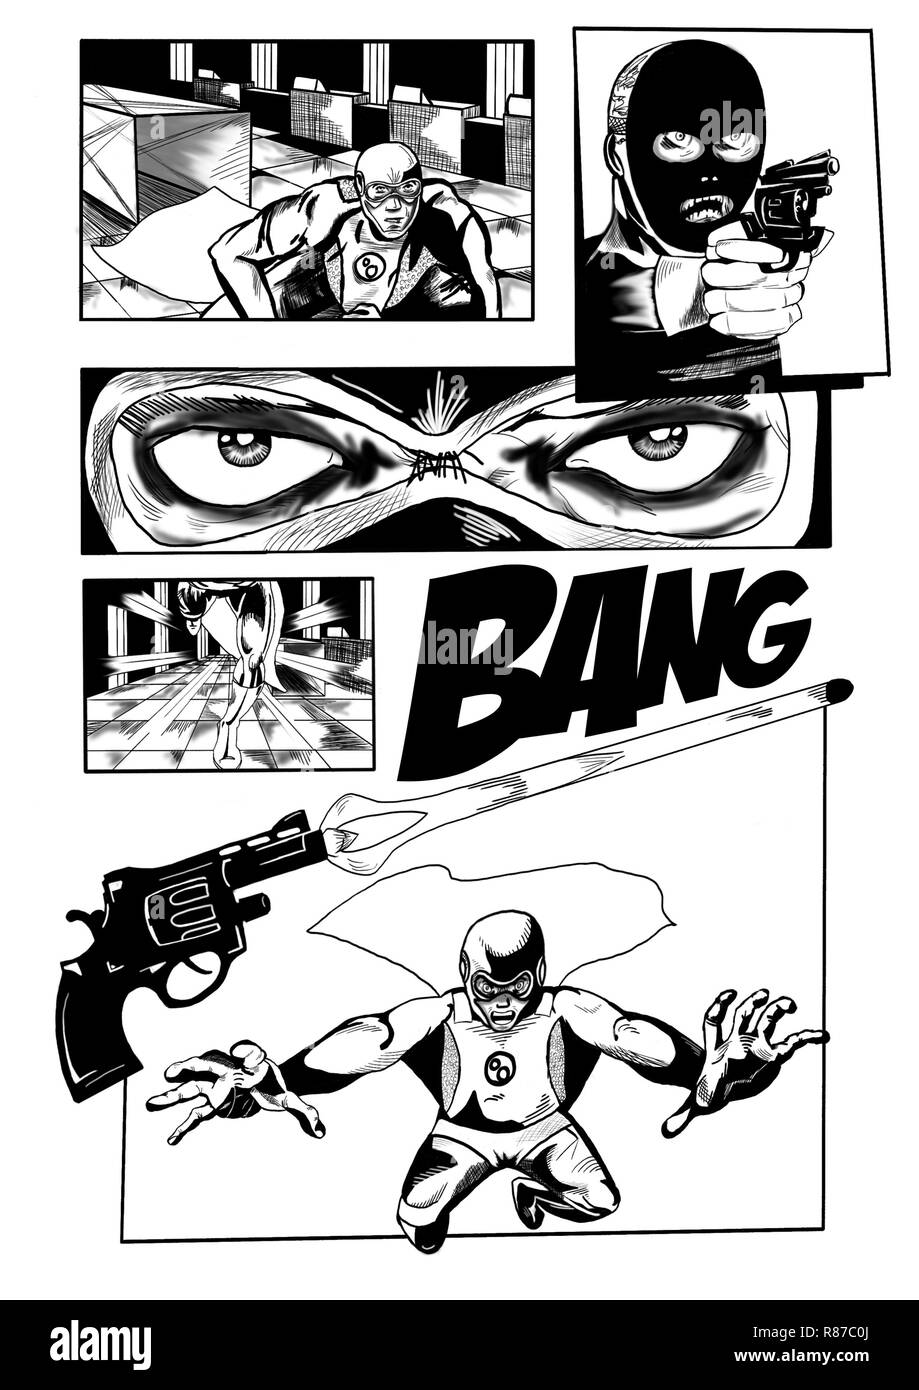 Ein Schwarz/Weiß Comic Seite verfügt über keine Sprechblasen für den fiktionalen Superhelden Bubbleman. Digital gezeichnet. Stockfoto